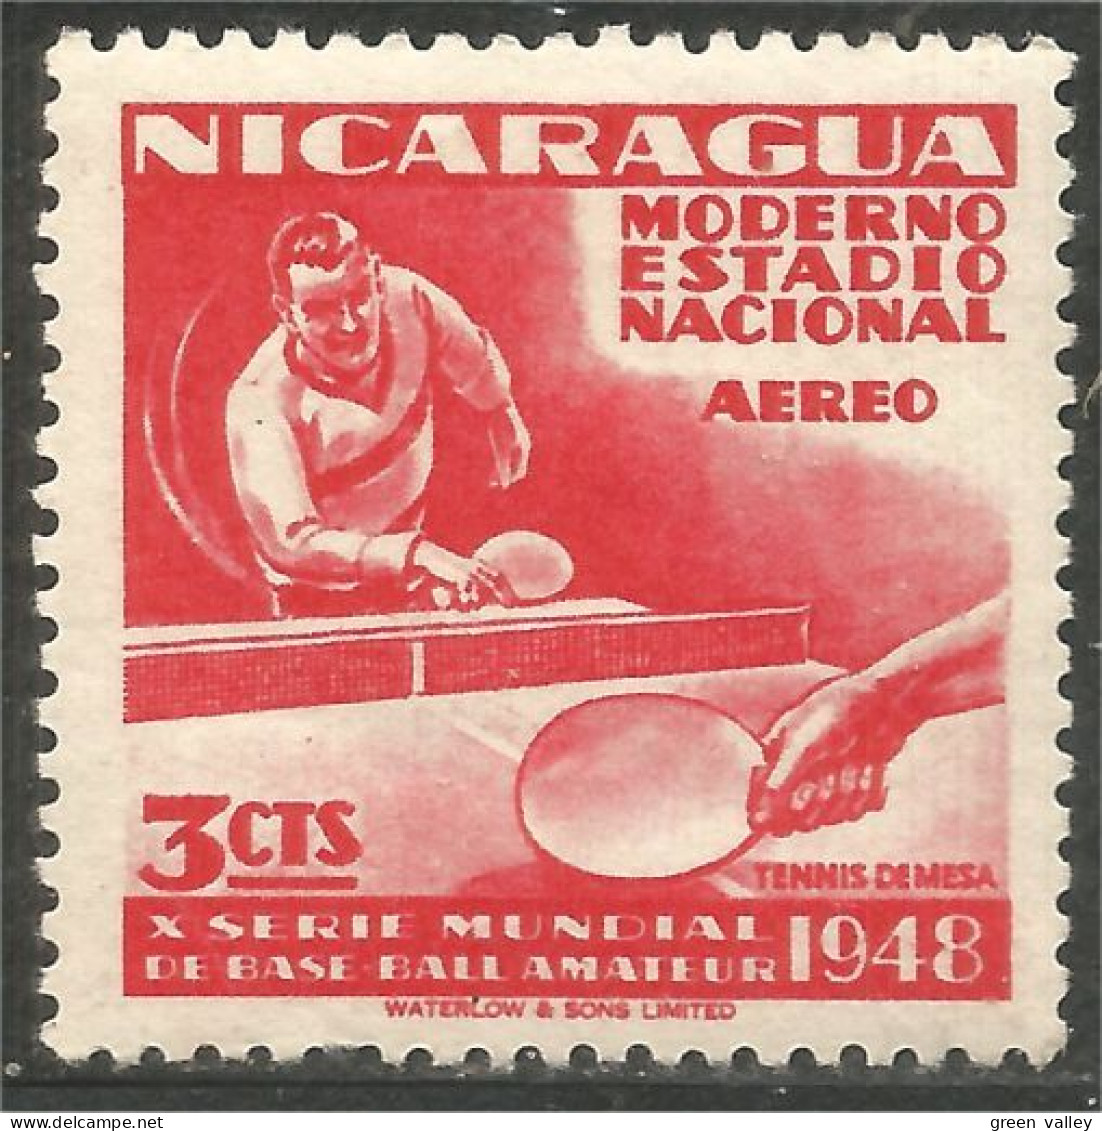 684 Nicaragua Tennis Table Ping Pong MH * Neuf (NIC-585) - Tennis De Table